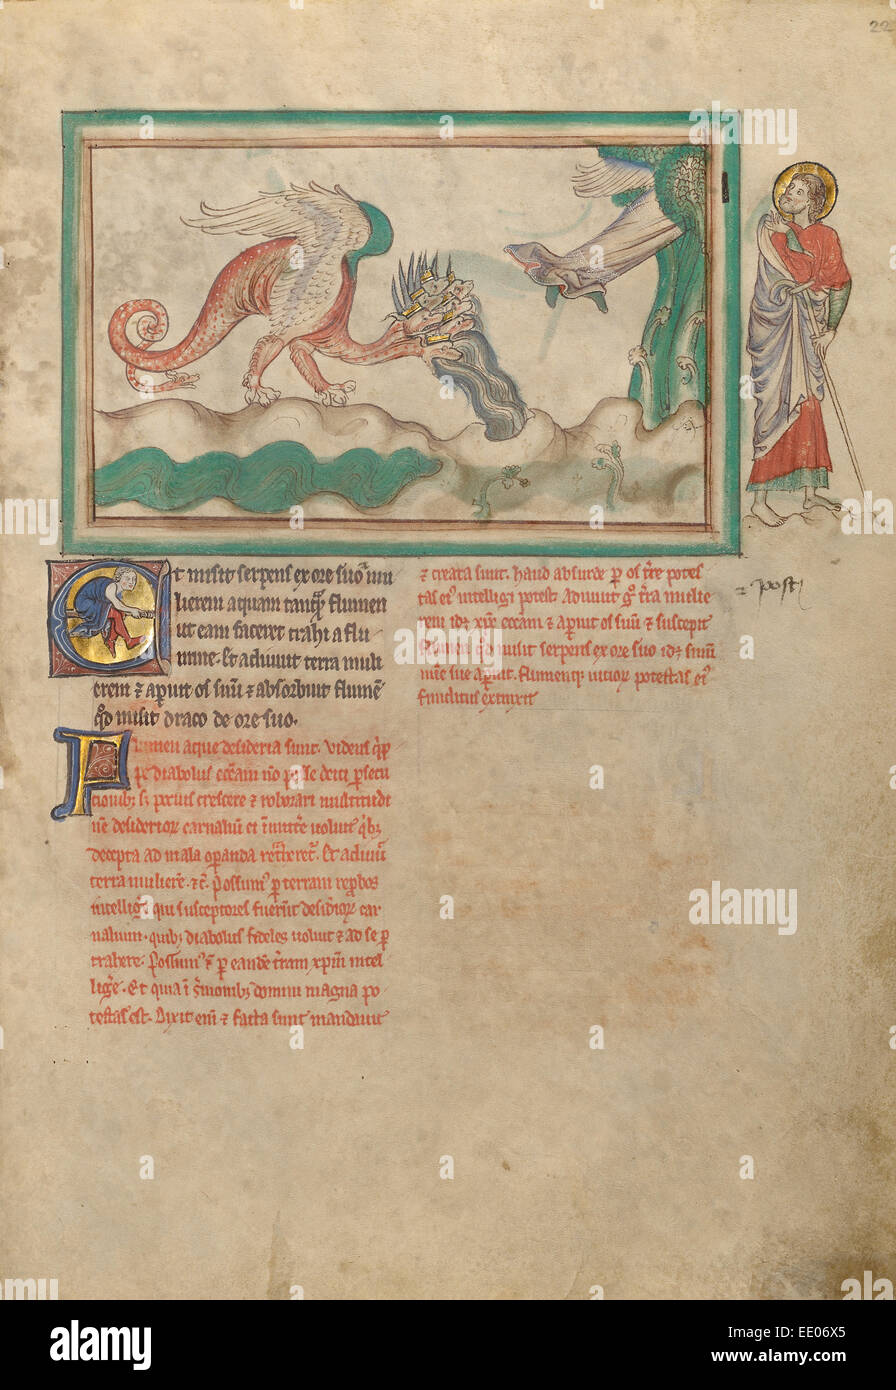 Il Drago getta acqua dopo la donna vestita di sole; sconosciuta; Londra (probabilmente), l'Inghilterra, l'Europa; circa 1255 - 1260 Foto Stock